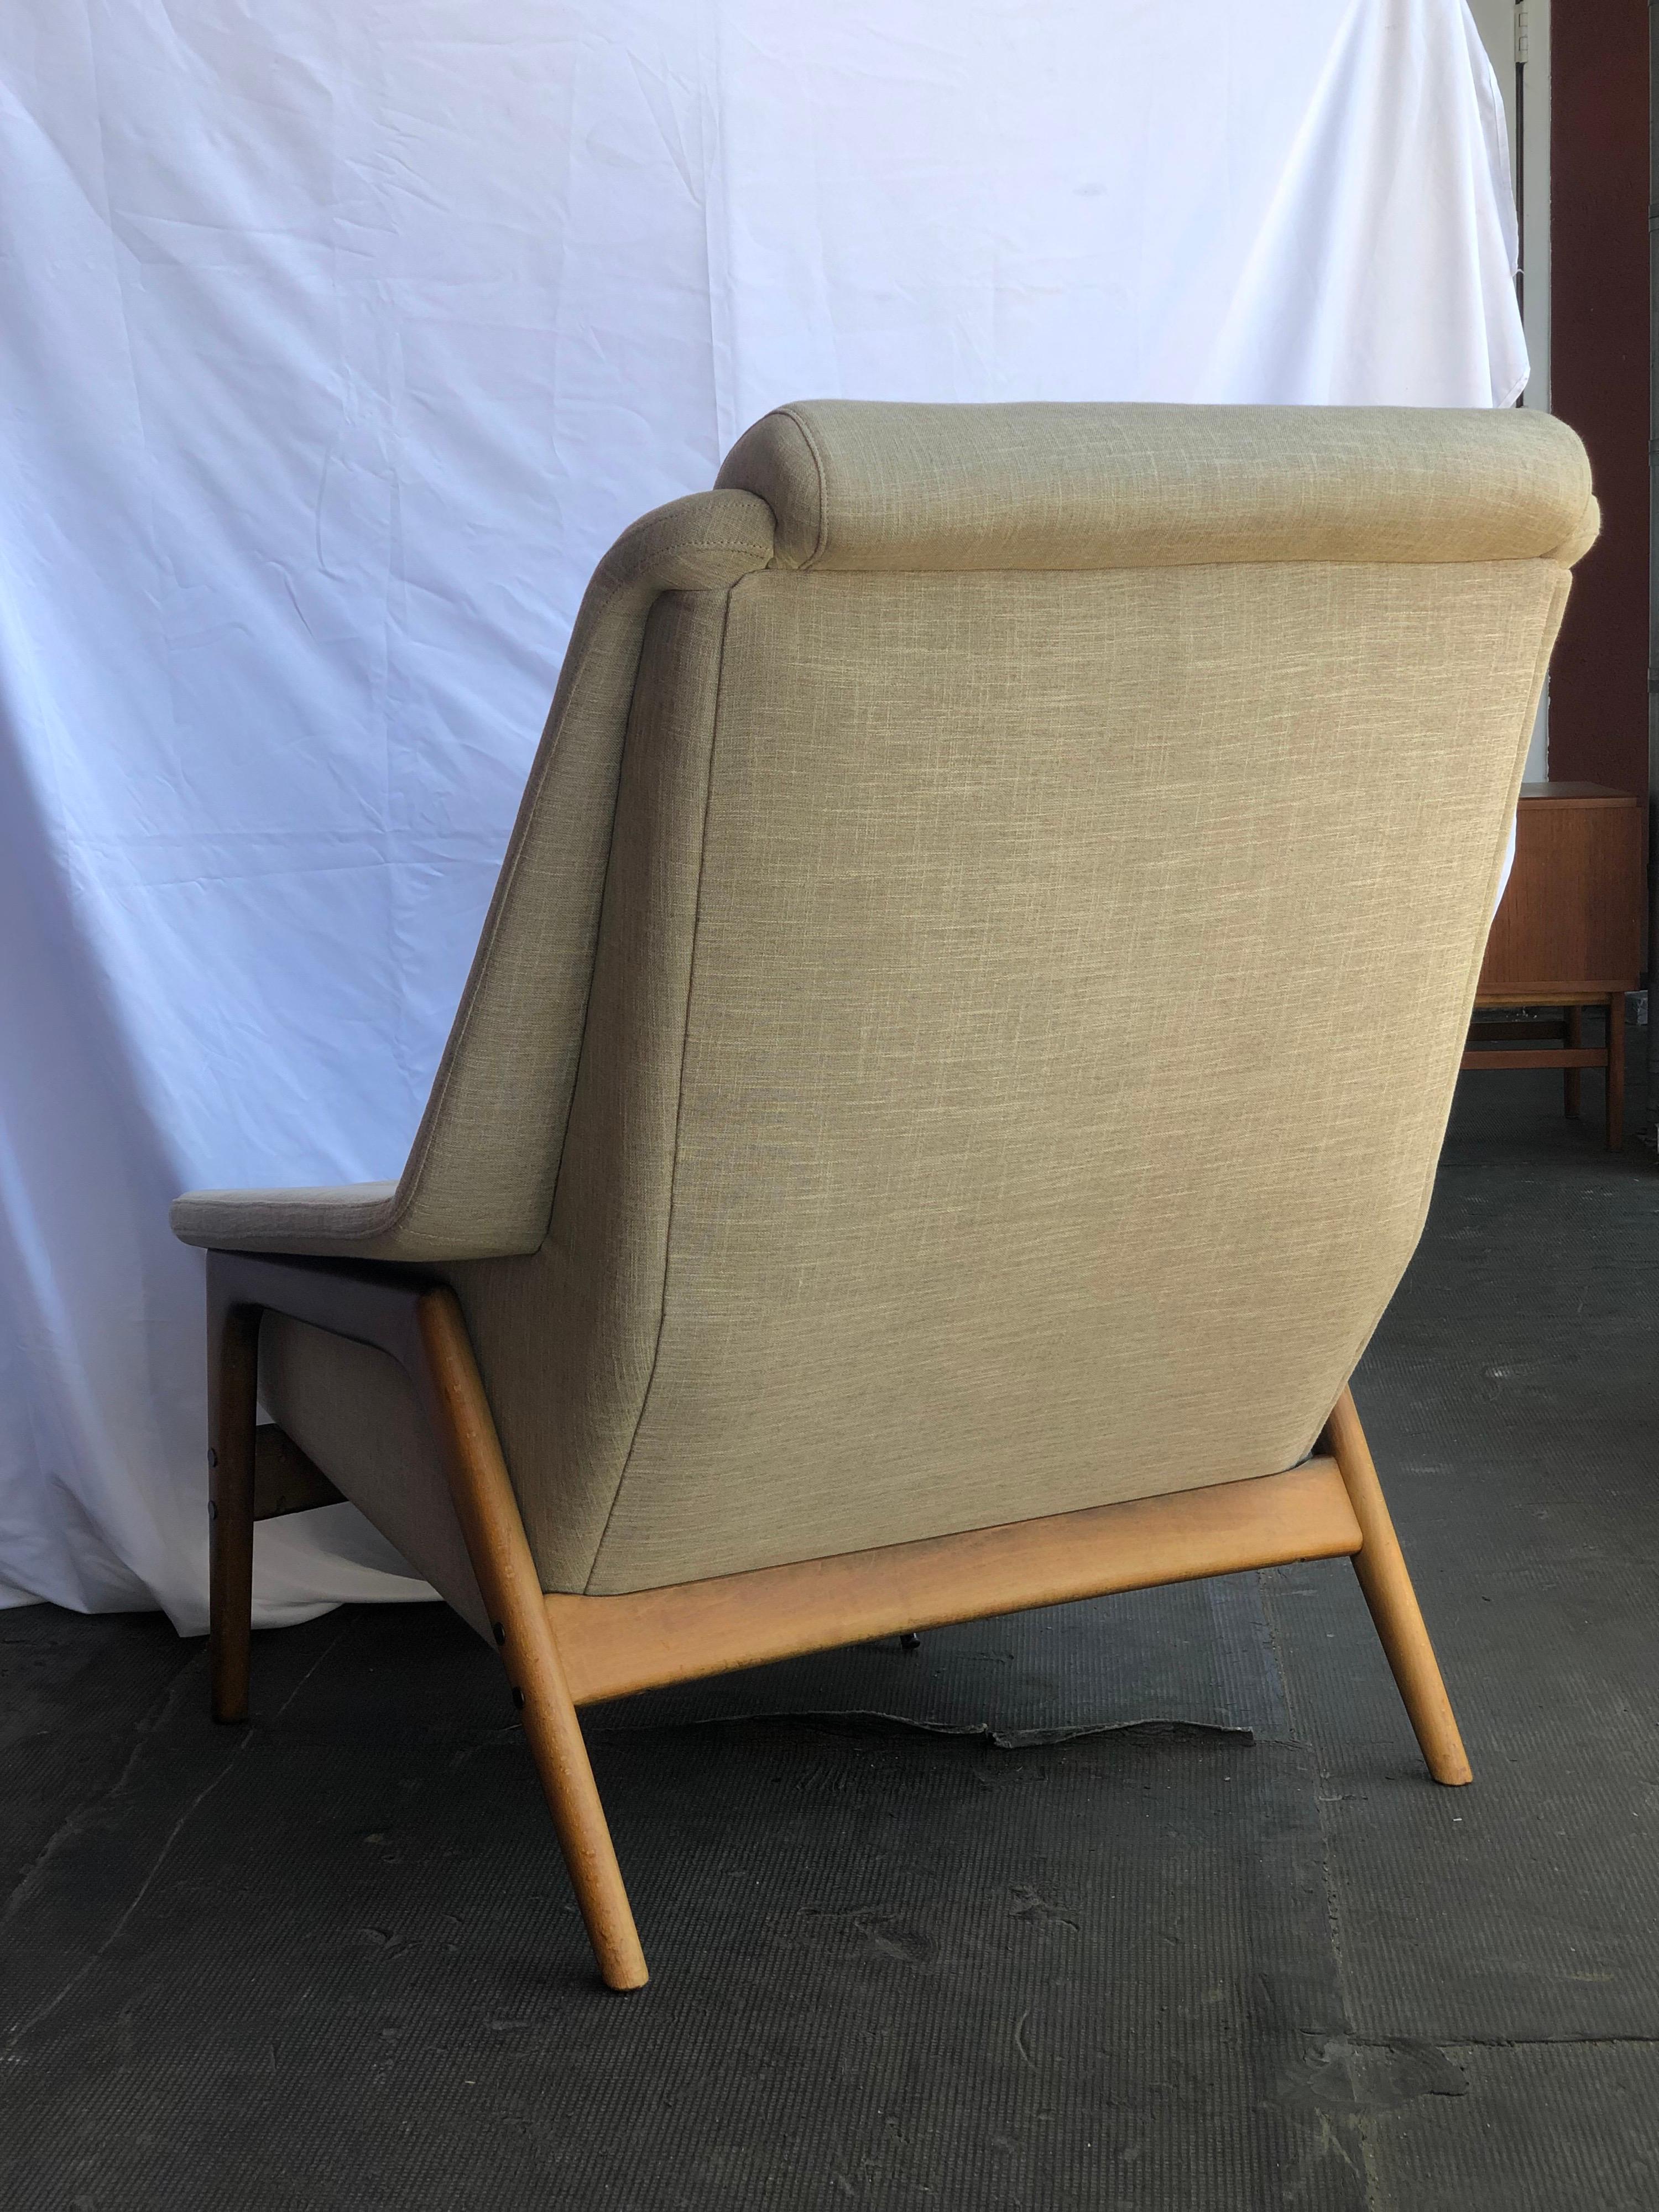 Dieser von Folke Ohlsson für den schwedischen Hersteller Dux entworfene Loungesessel bietet eine äußerst bequeme Sitzfläche in einem Rahmen aus Teakholz. 

Maße: B. 33 Zoll; H. 33,5 Zoll; T. 39 Zoll.
W. 83,82 cm; H. 85,09 cm; T. 99,06 cm.
Sitz